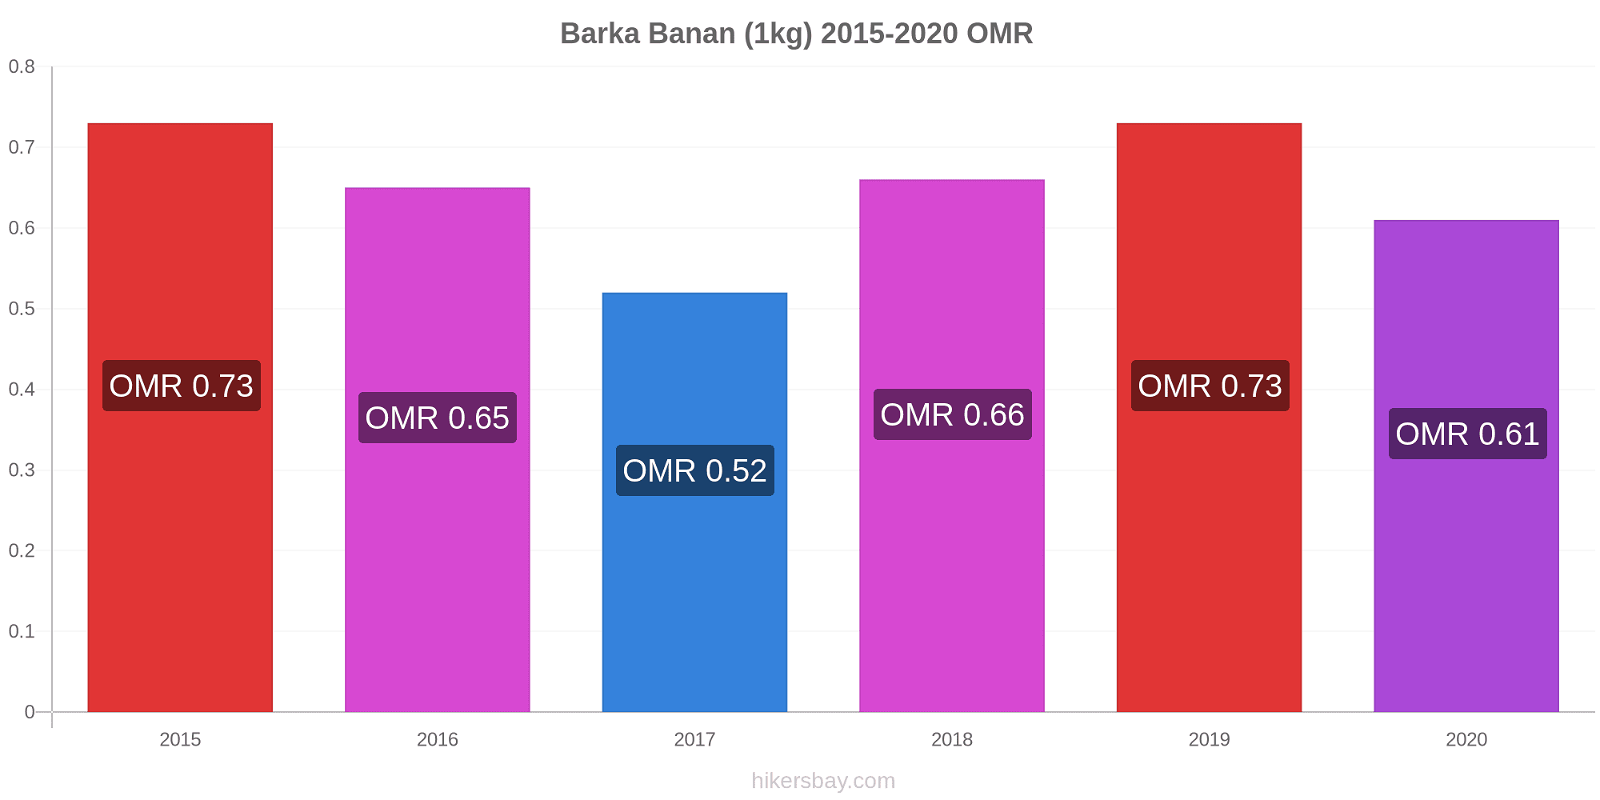 Barka prisændringer Banan (1kg) hikersbay.com